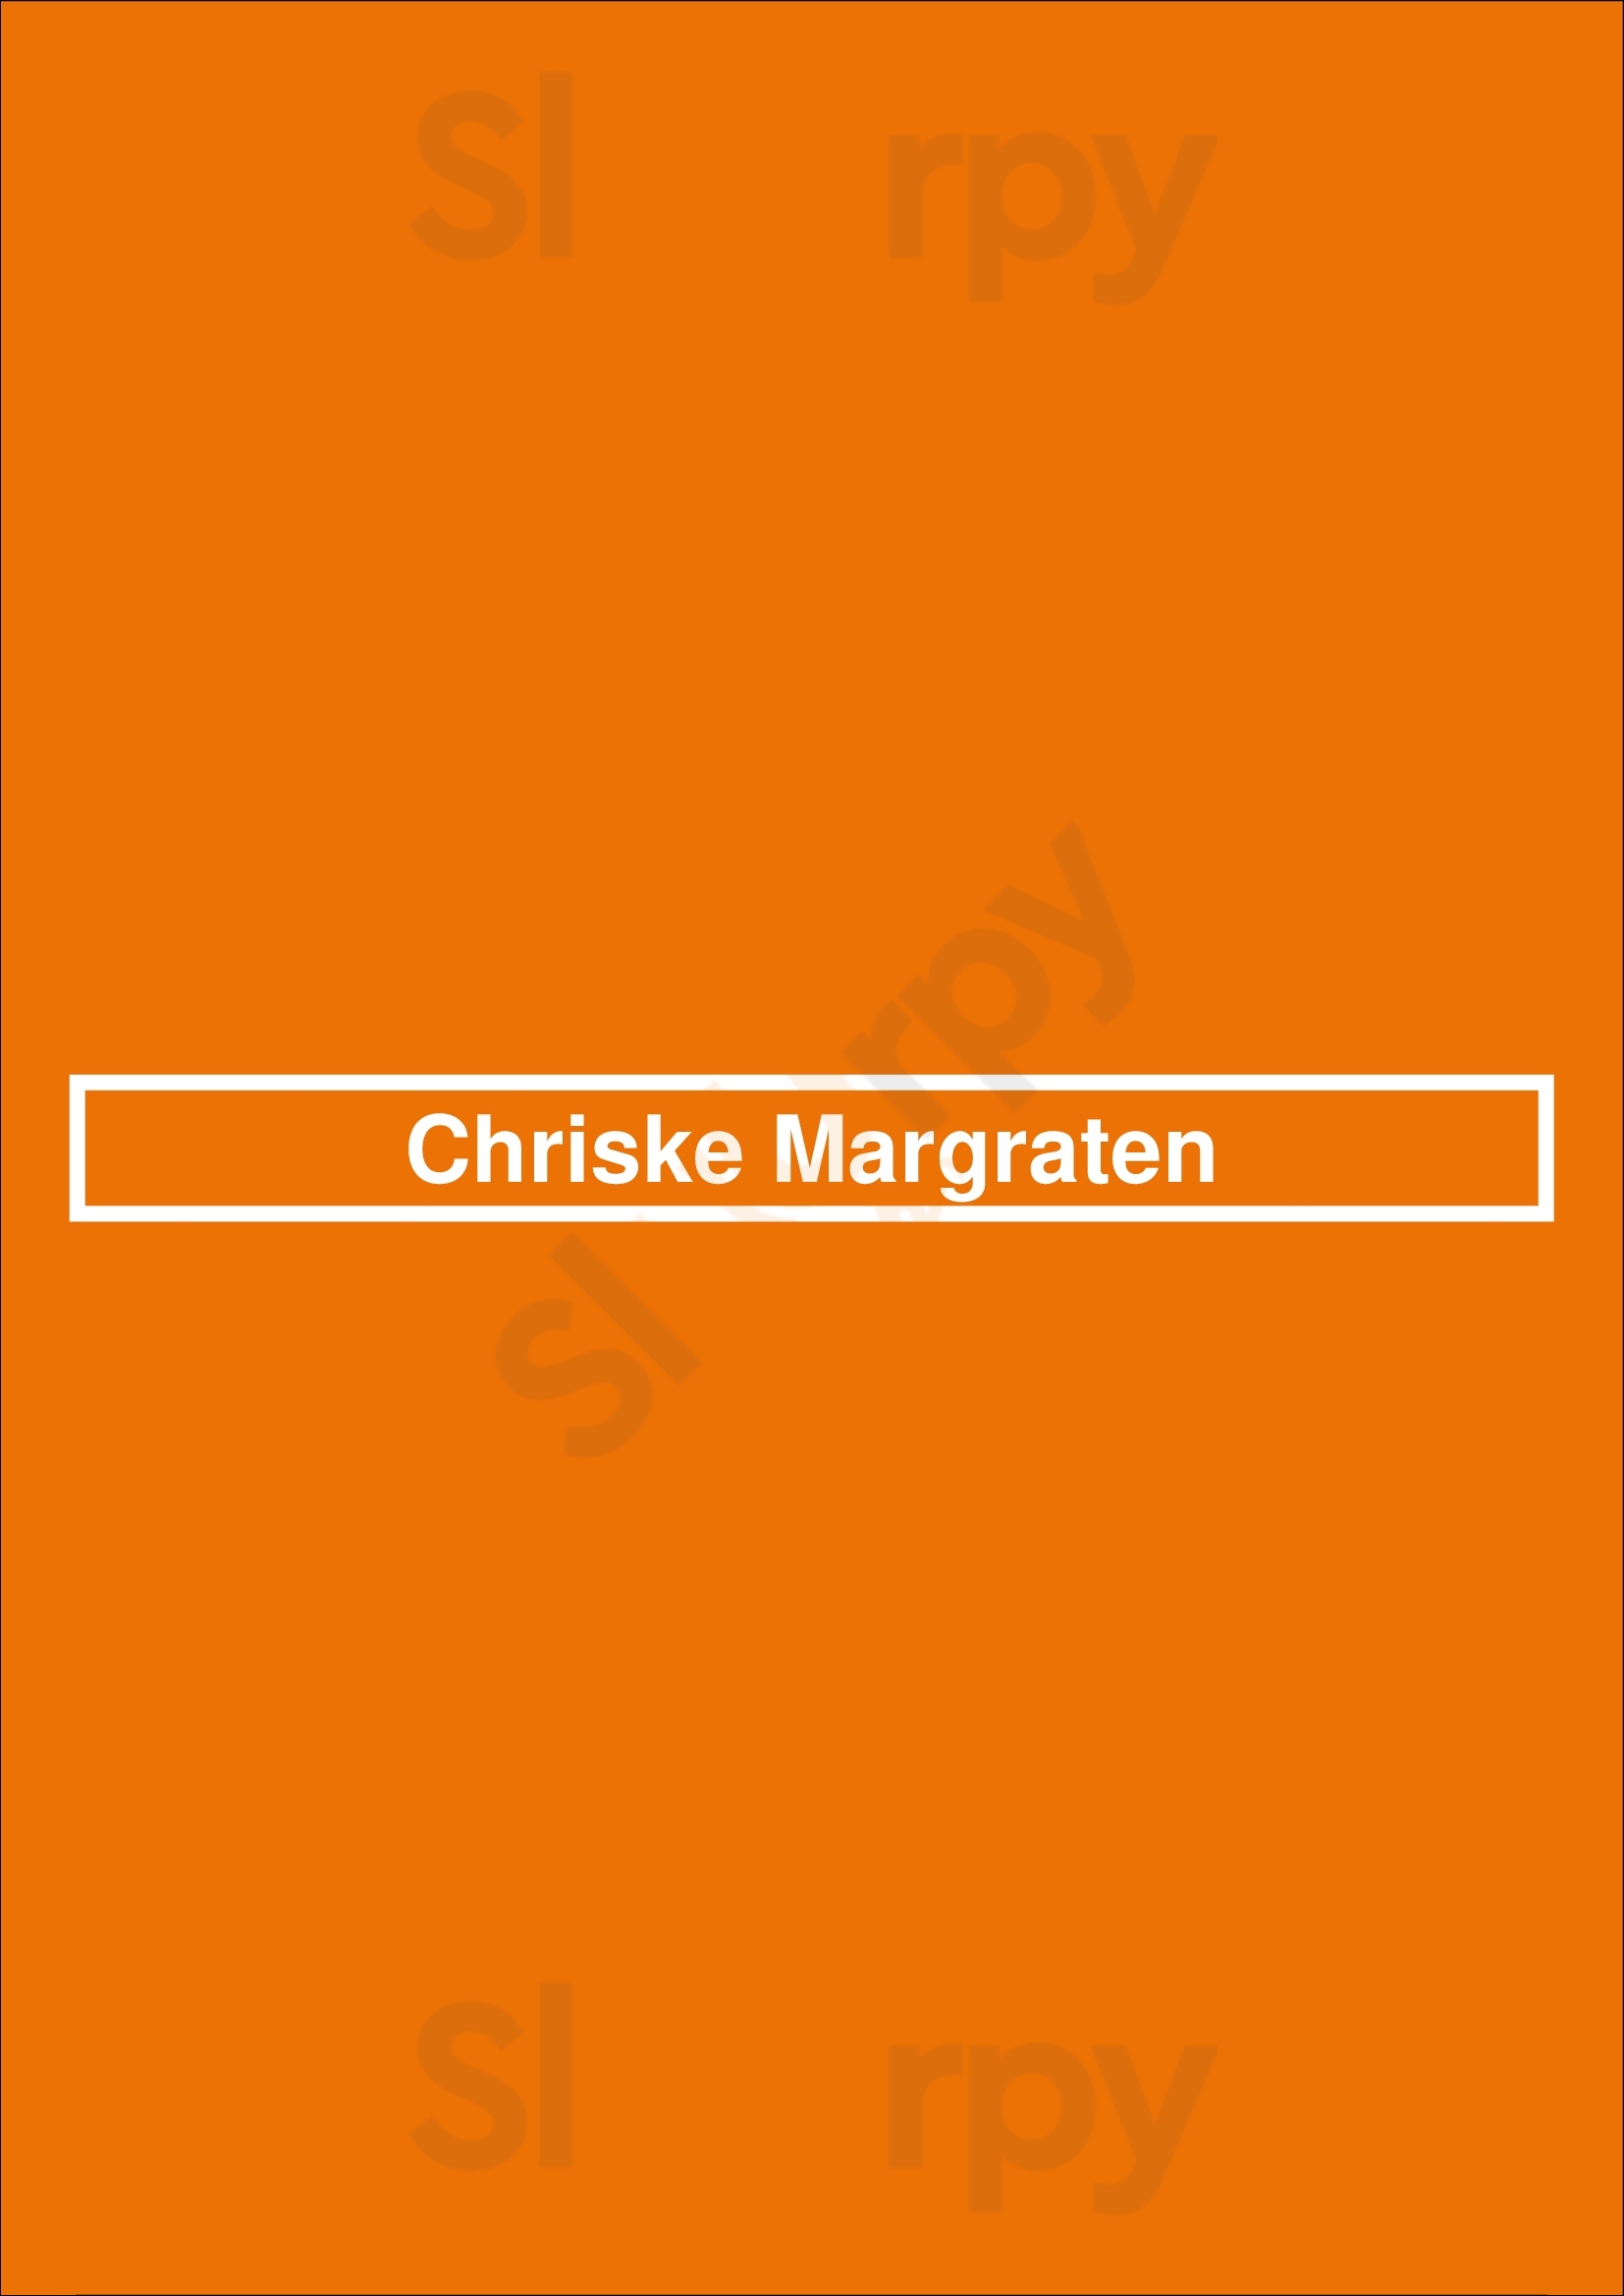 Chriske Margraten Margraten Menu - 1